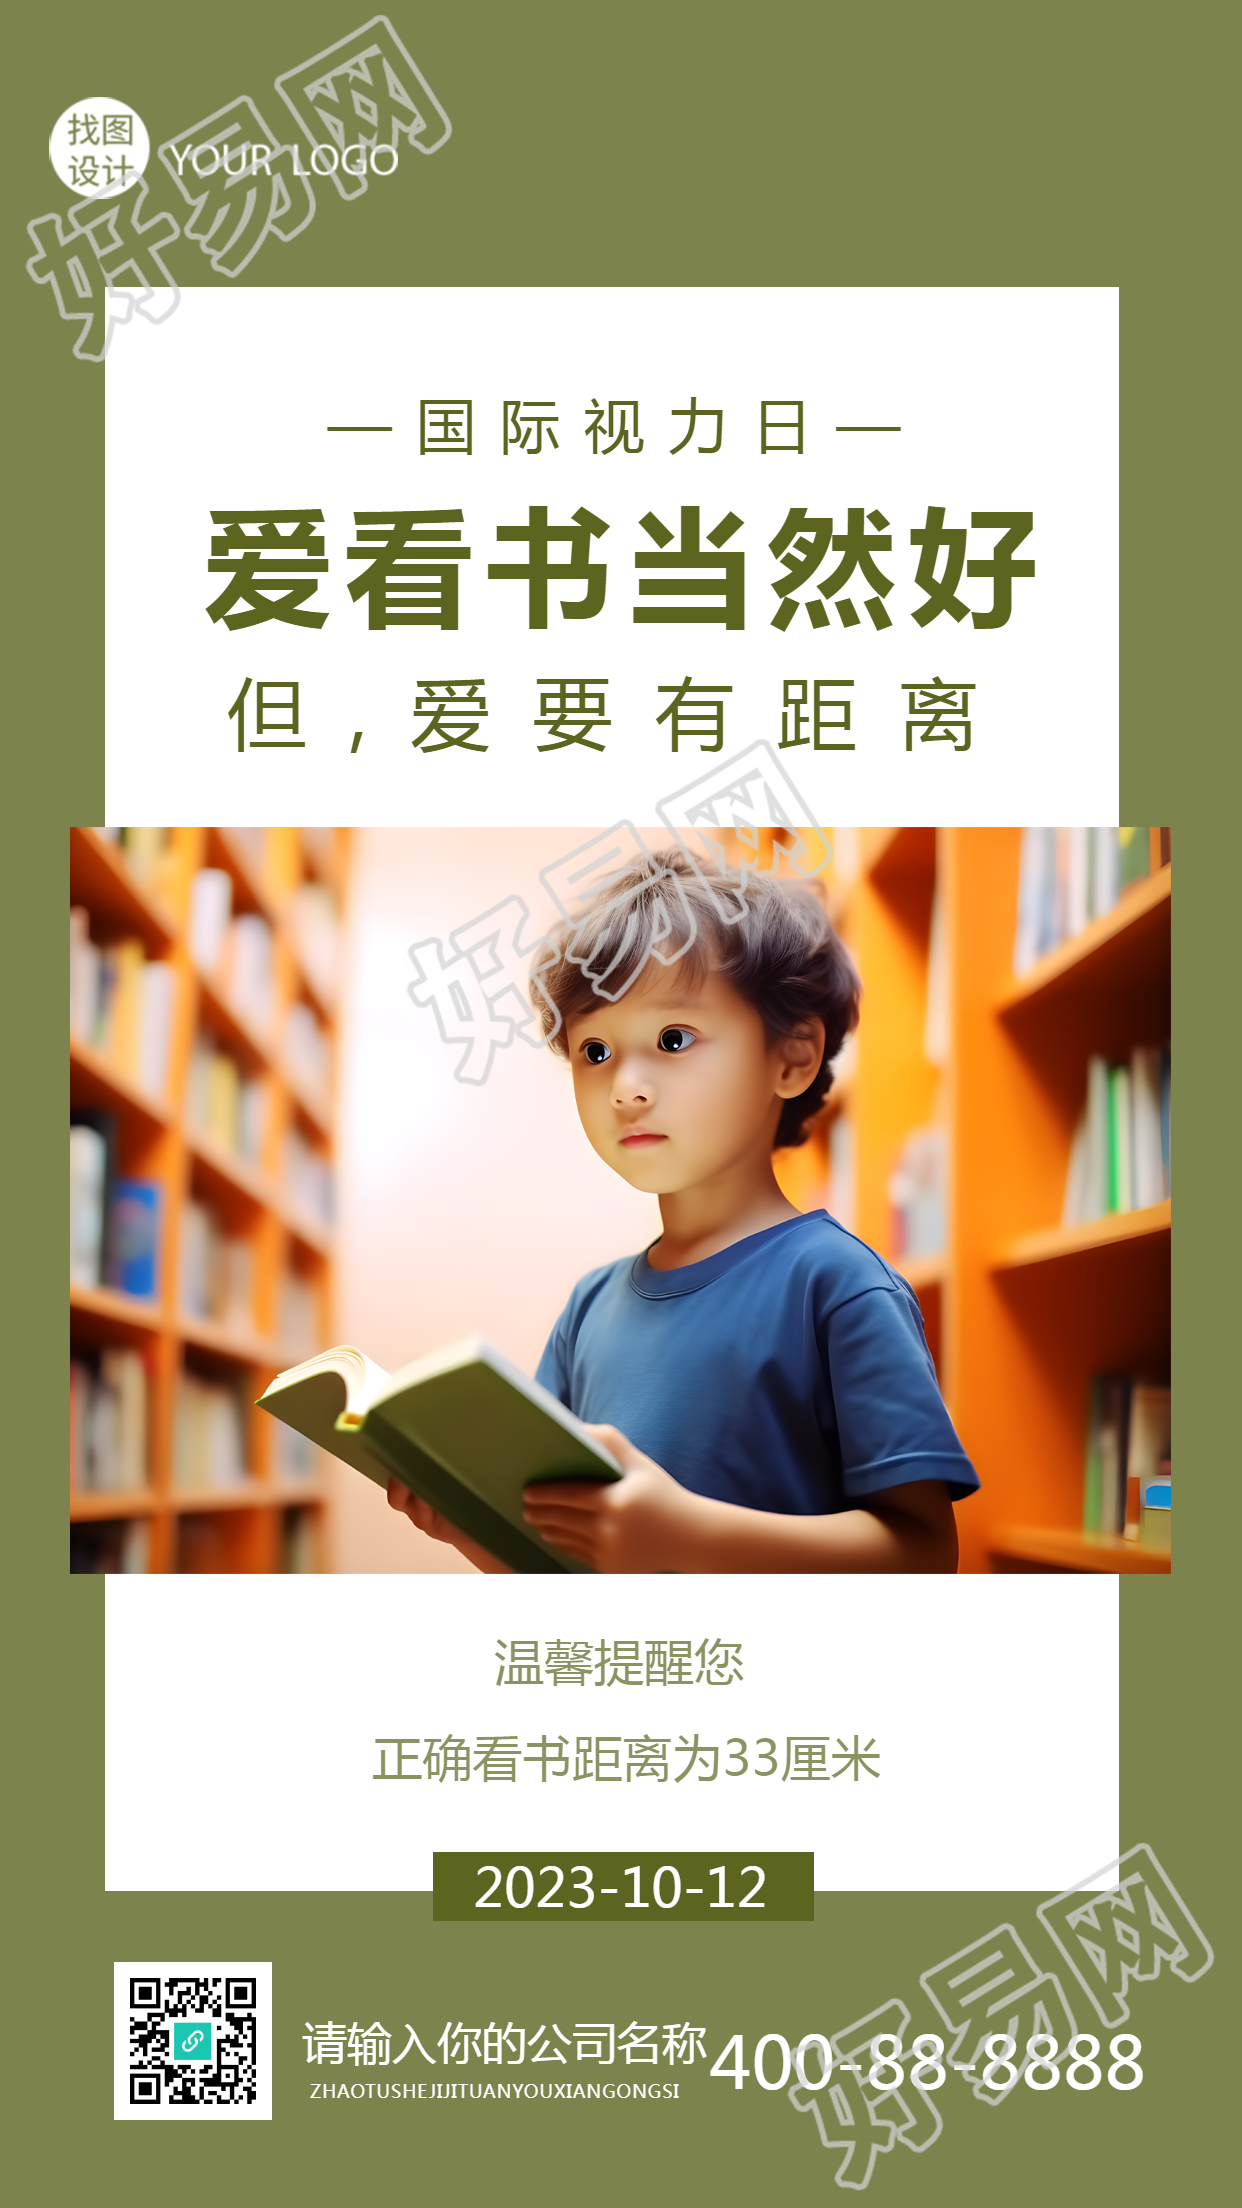 世界视力日图书馆看书的小男孩实景手机海报